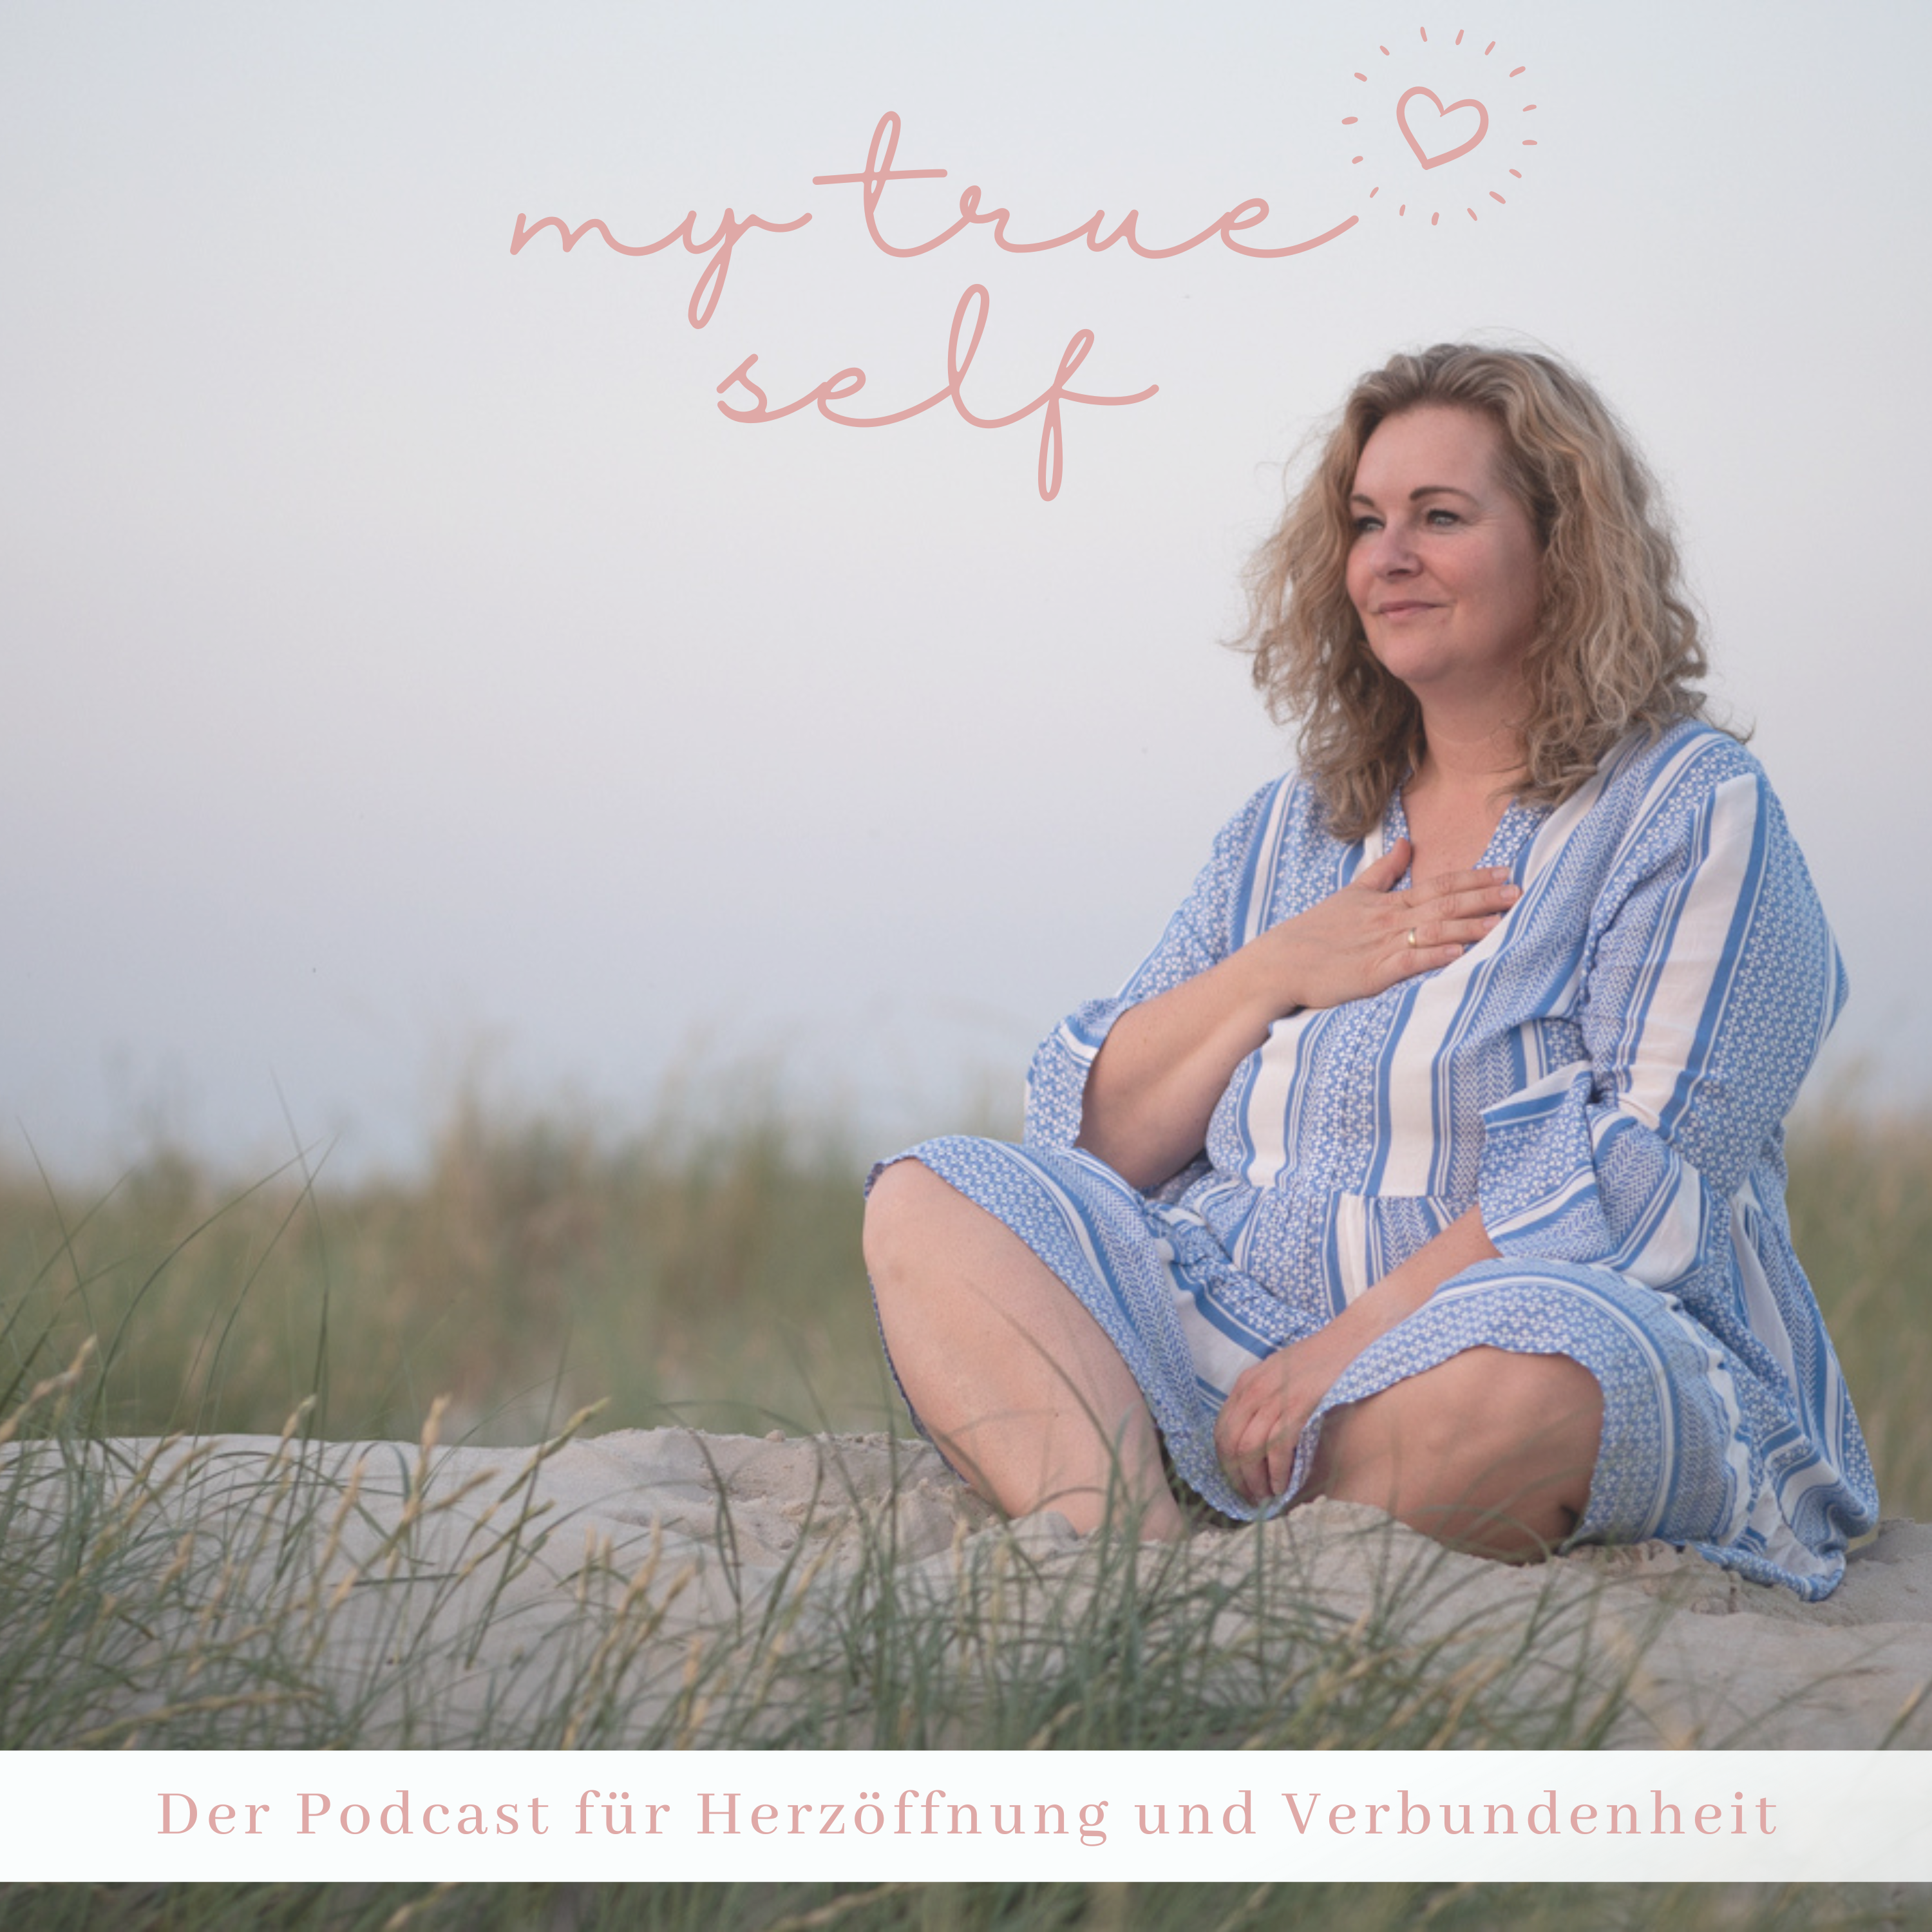 My true Self – Podcast für Herzöffnung und Verbundenheit